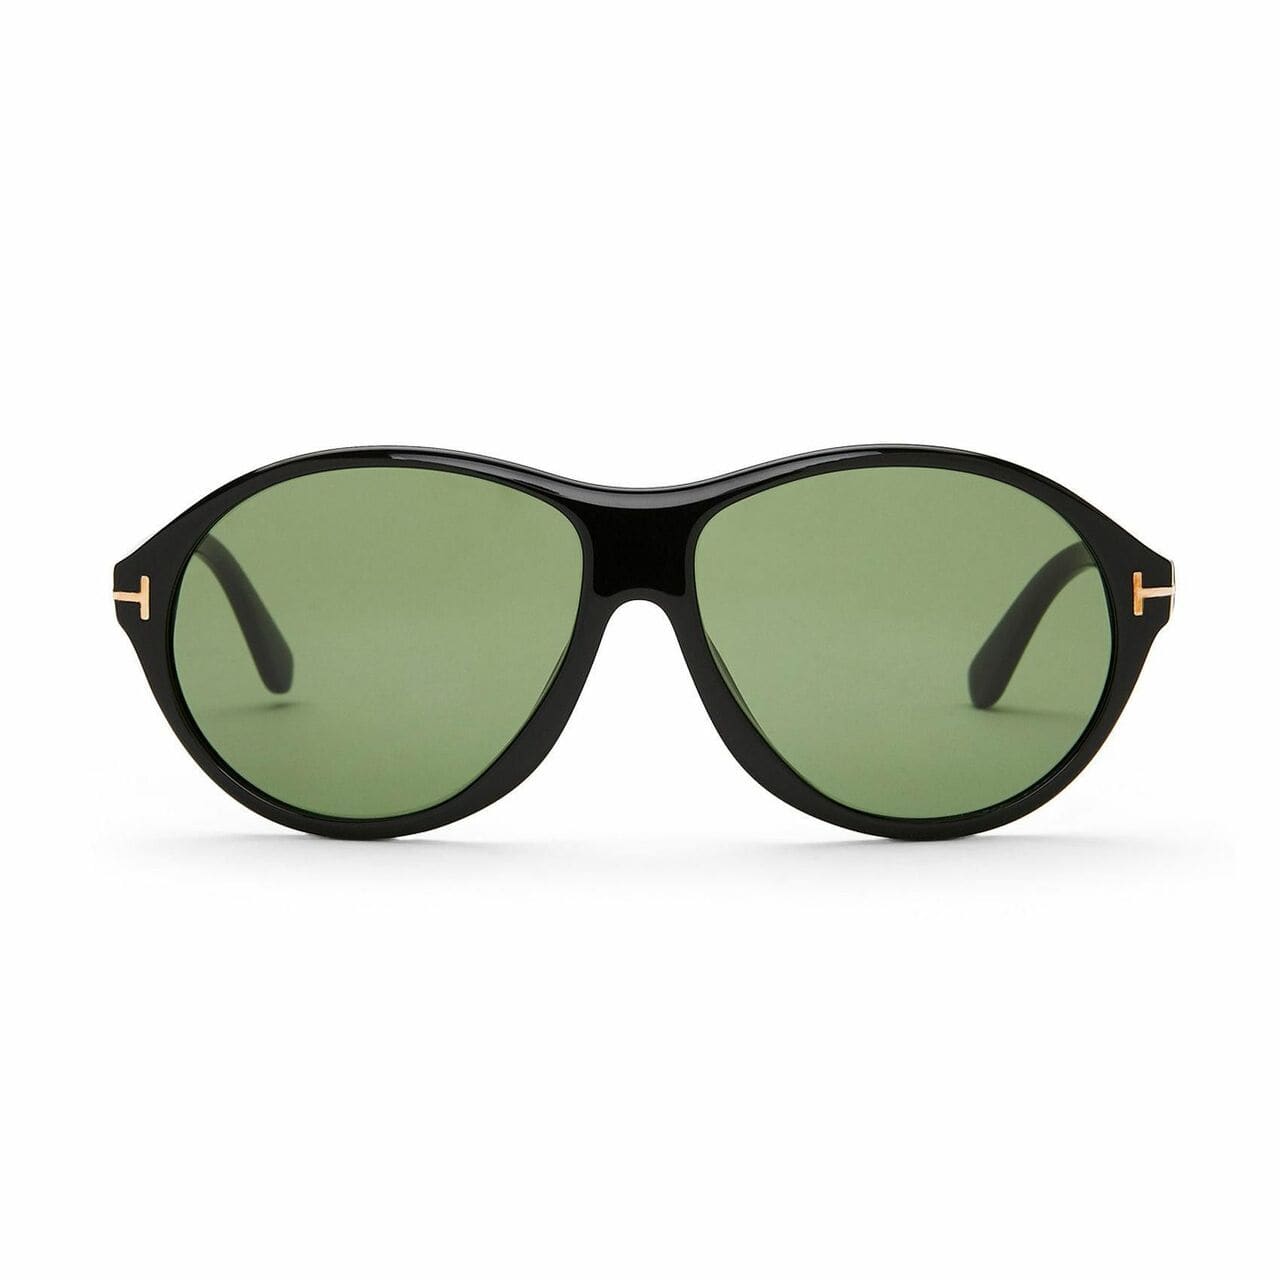 Tom Ford TF398-01N Tyler Black Oval Plastic Green Lens Men's Sunglasses 664689656028